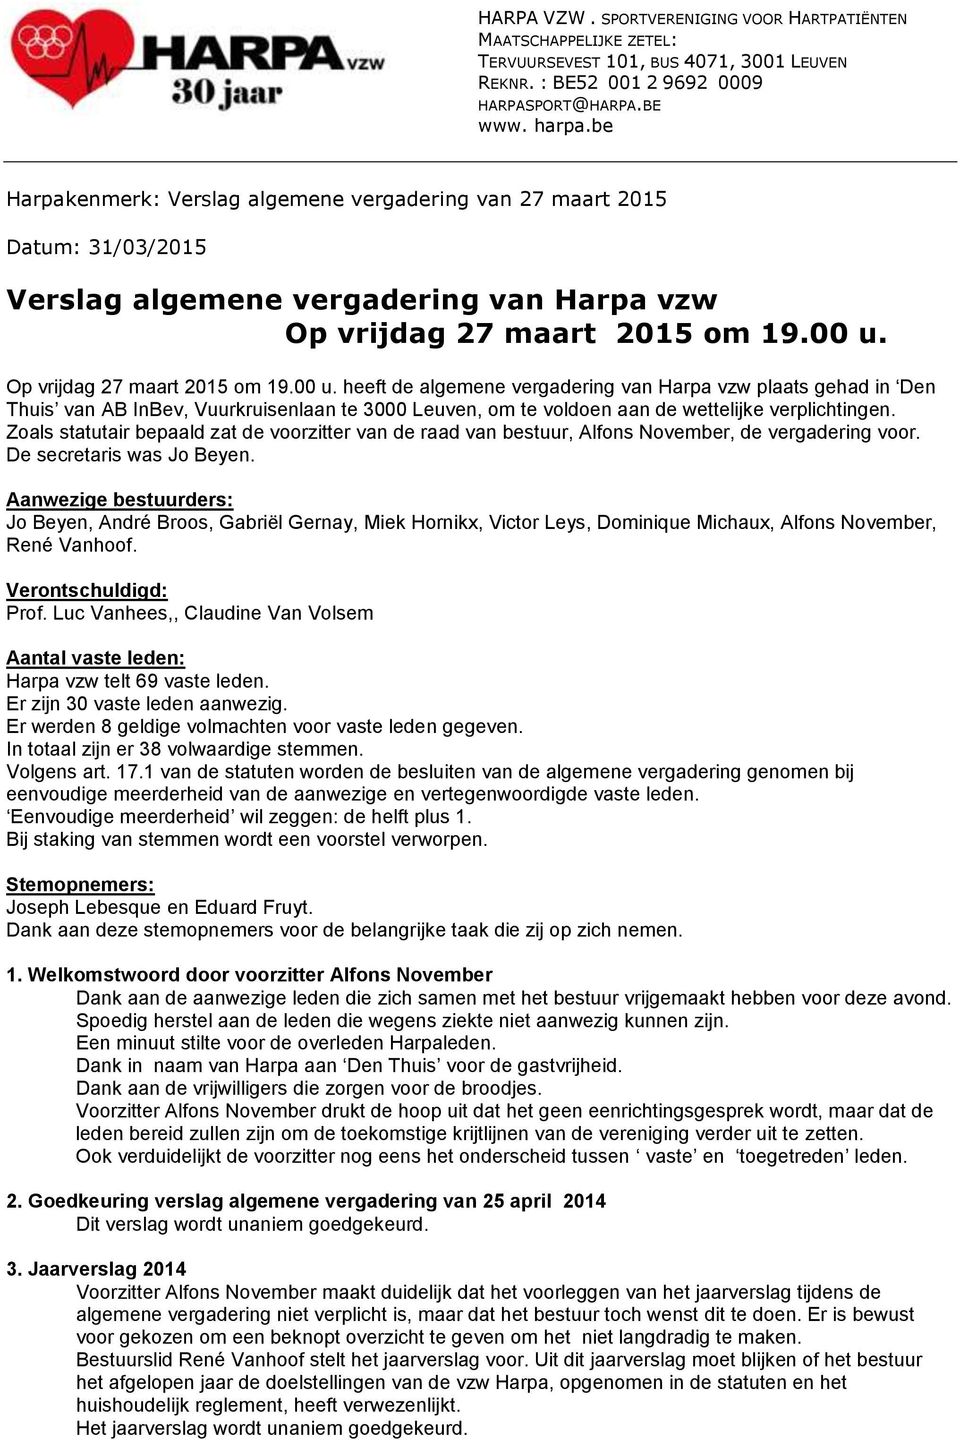 Op vrijdag 27 maart 2015 om 19.00 u. heeft de algemene vergadering van Harpa vzw plaats gehad in Den Thuis van AB InBev, Vuurkruisenlaan te 3000 Leuven, om te voldoen aan de wettelijke verplichtingen.